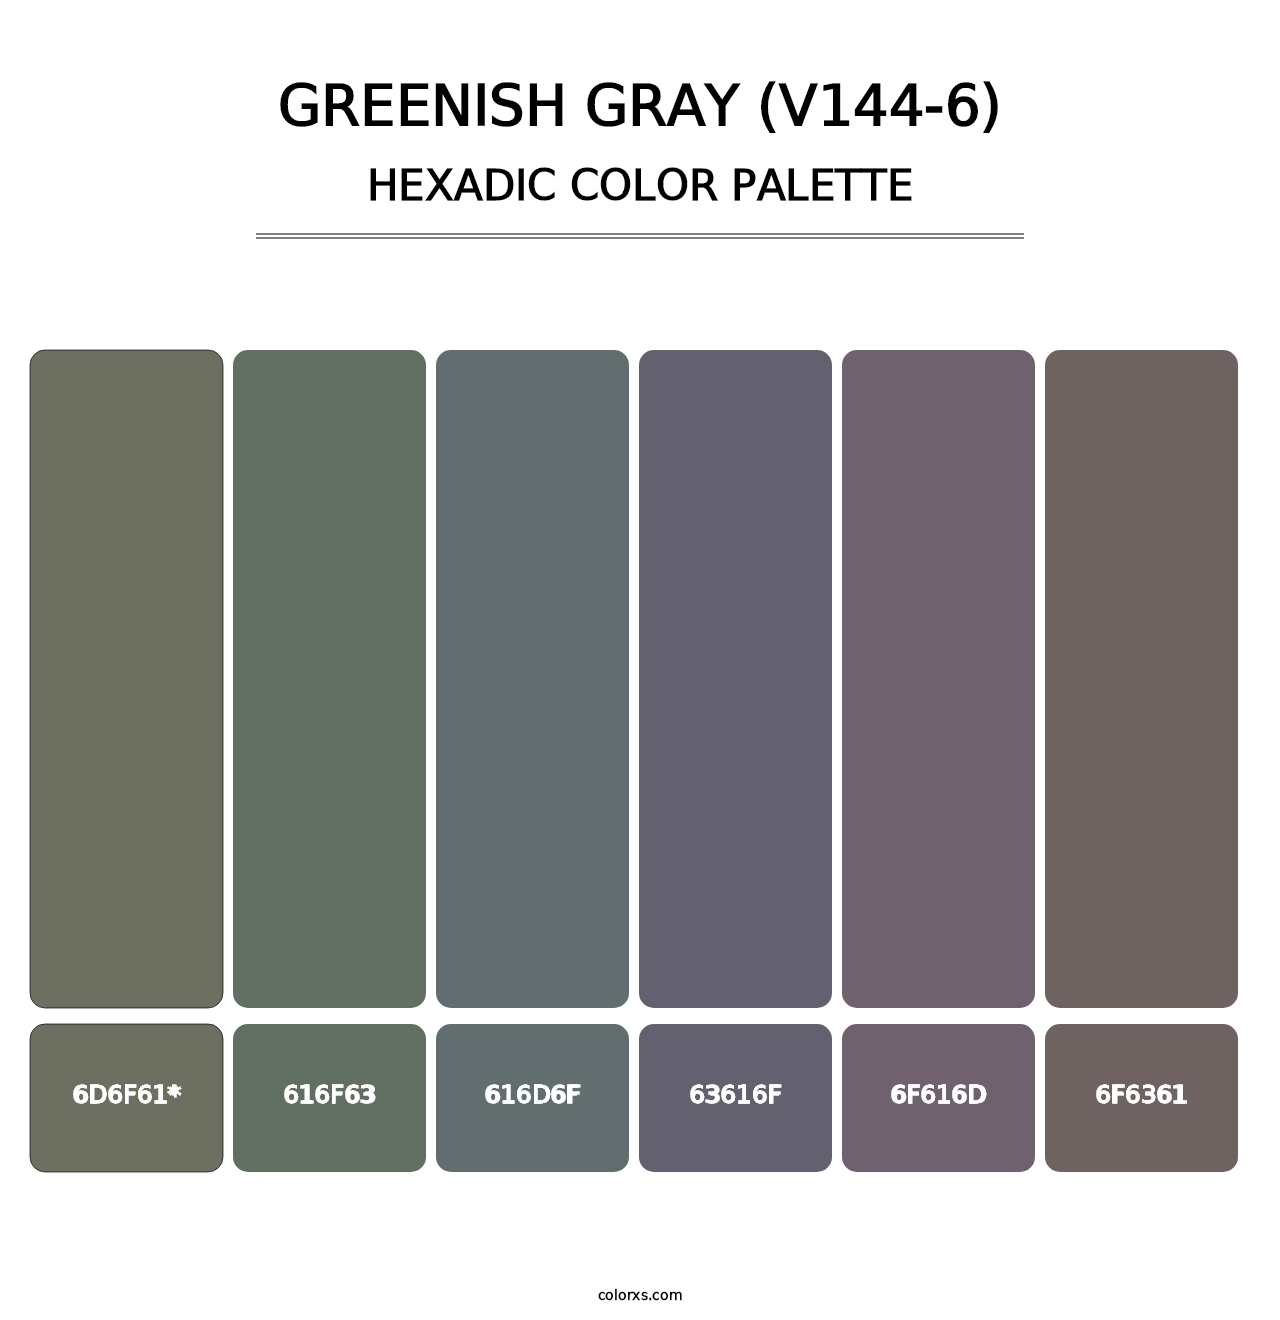 Greenish Gray (V144-6) - Hexadic Color Palette